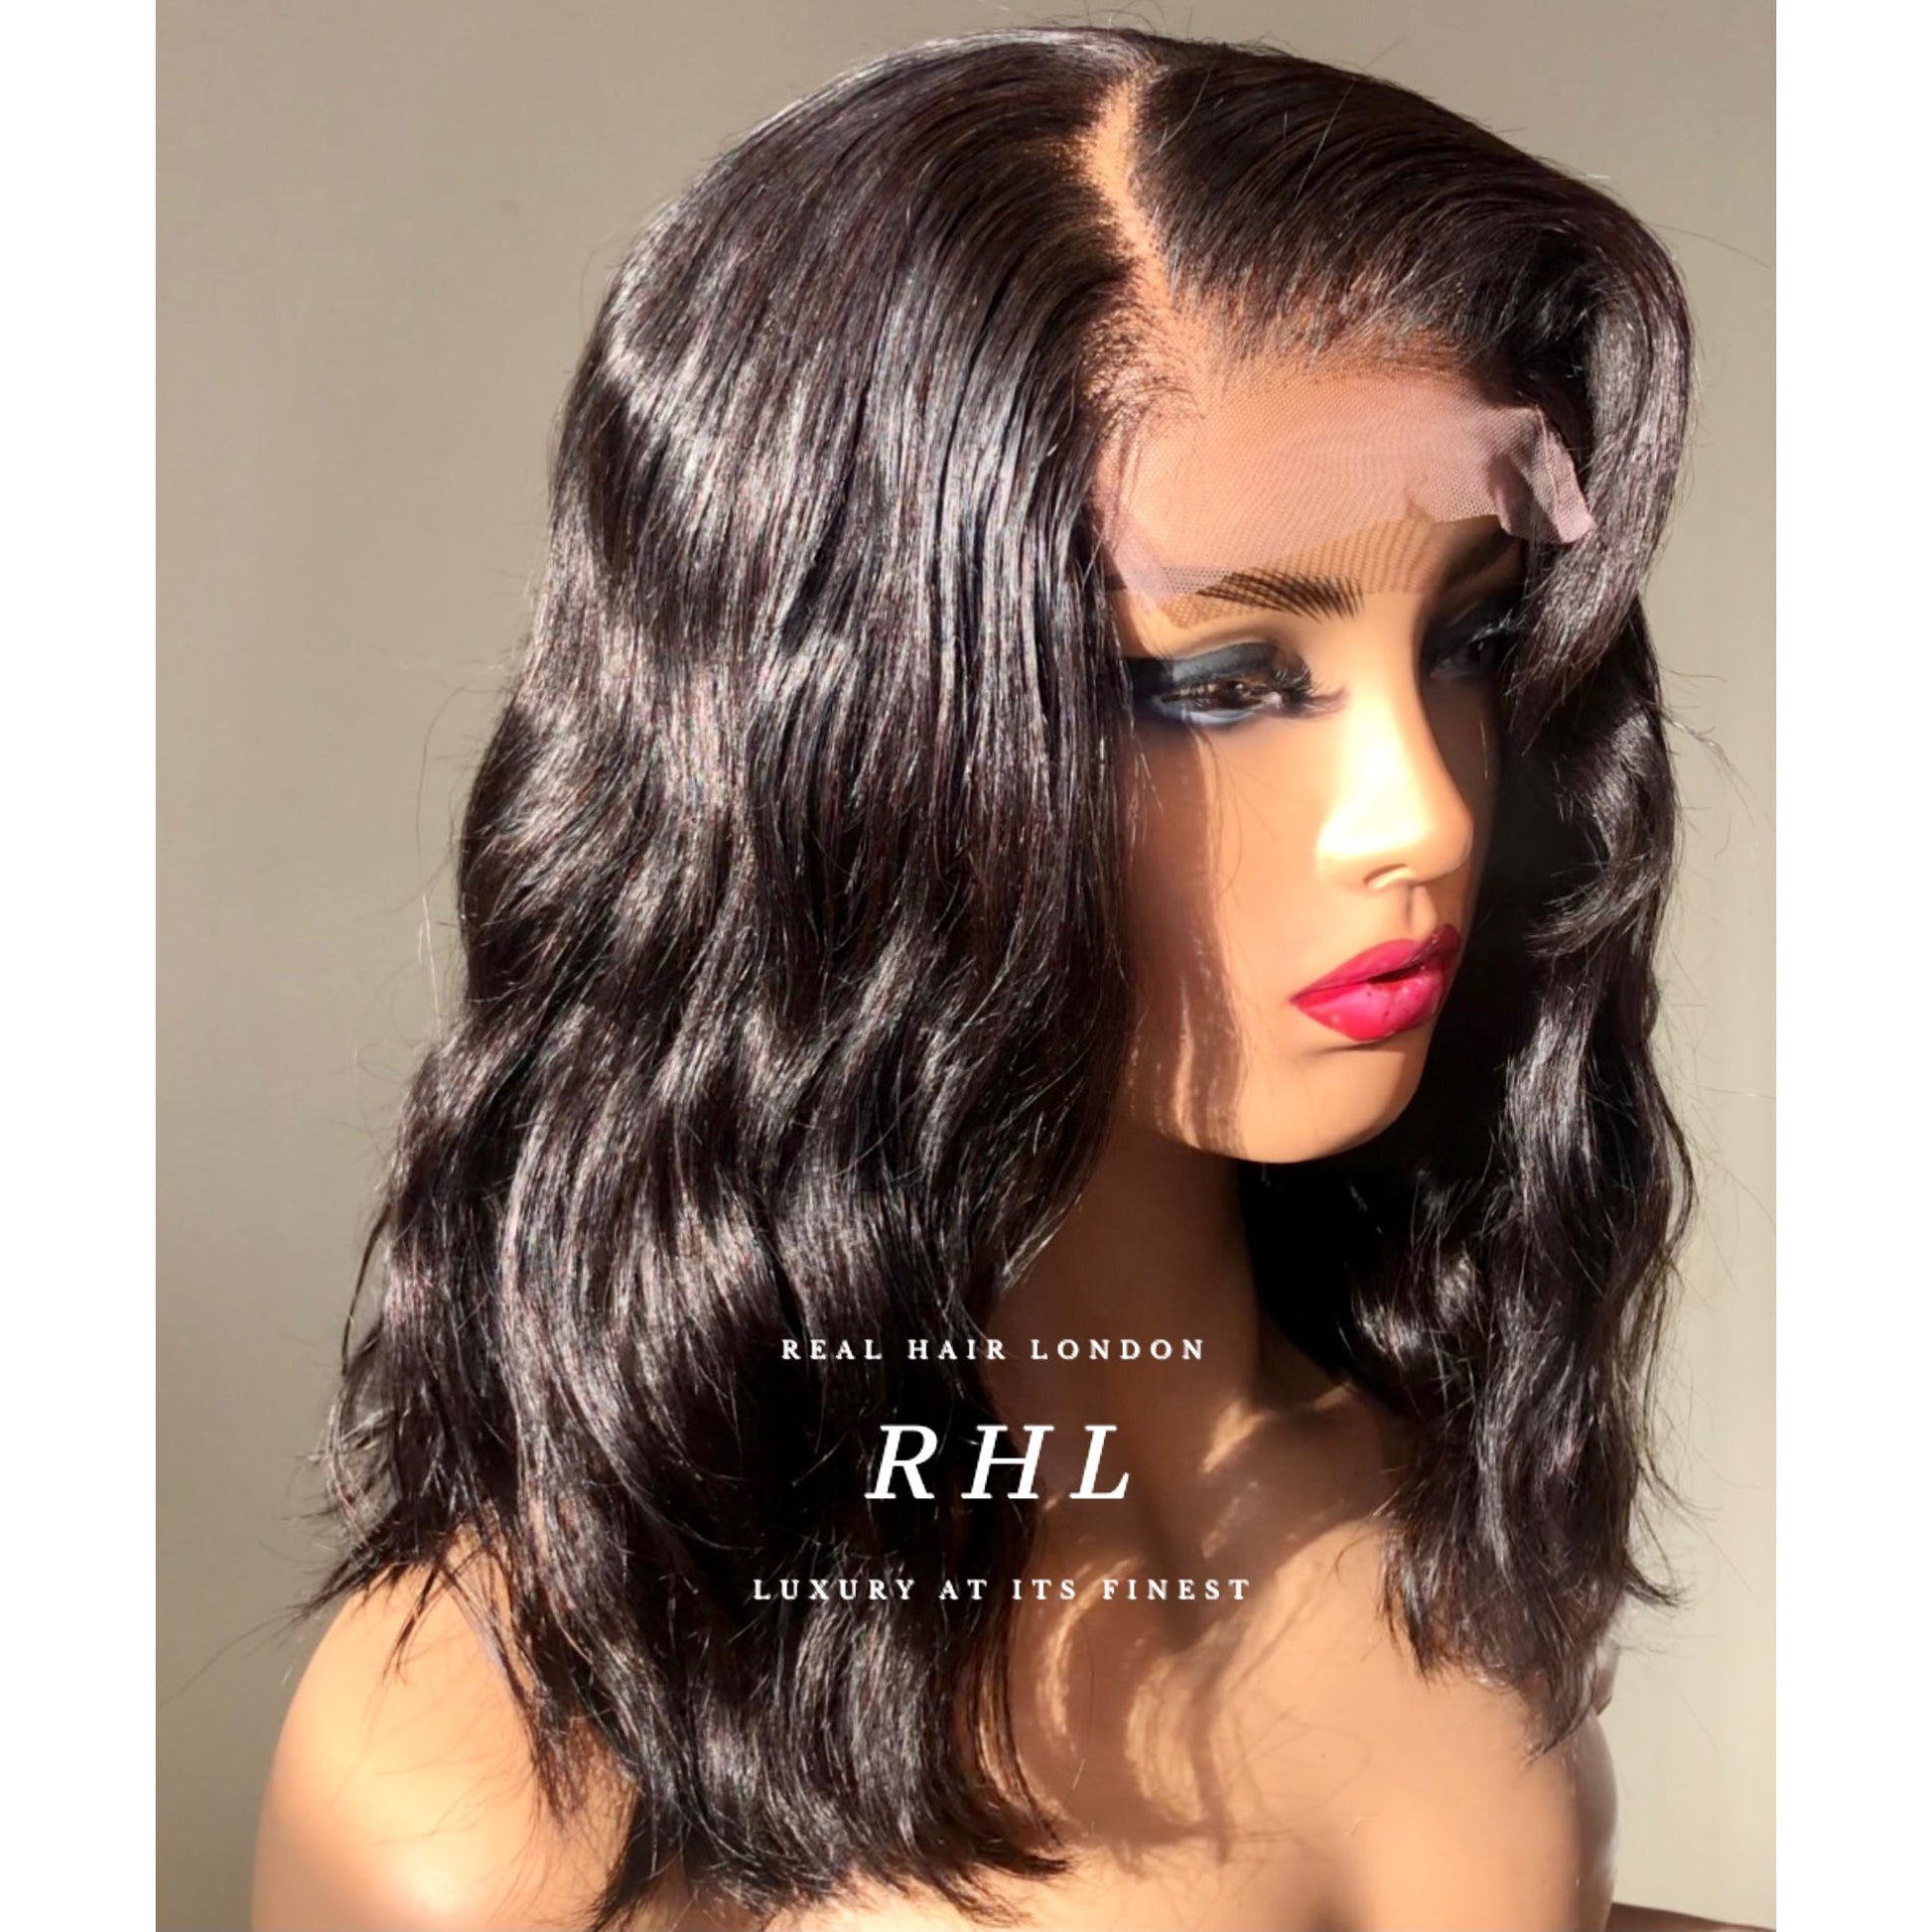 Sabrina Wig: 100% Human Hair, Length 16”, Density 150% or 180%, 4”x4” Lace Closure Wig